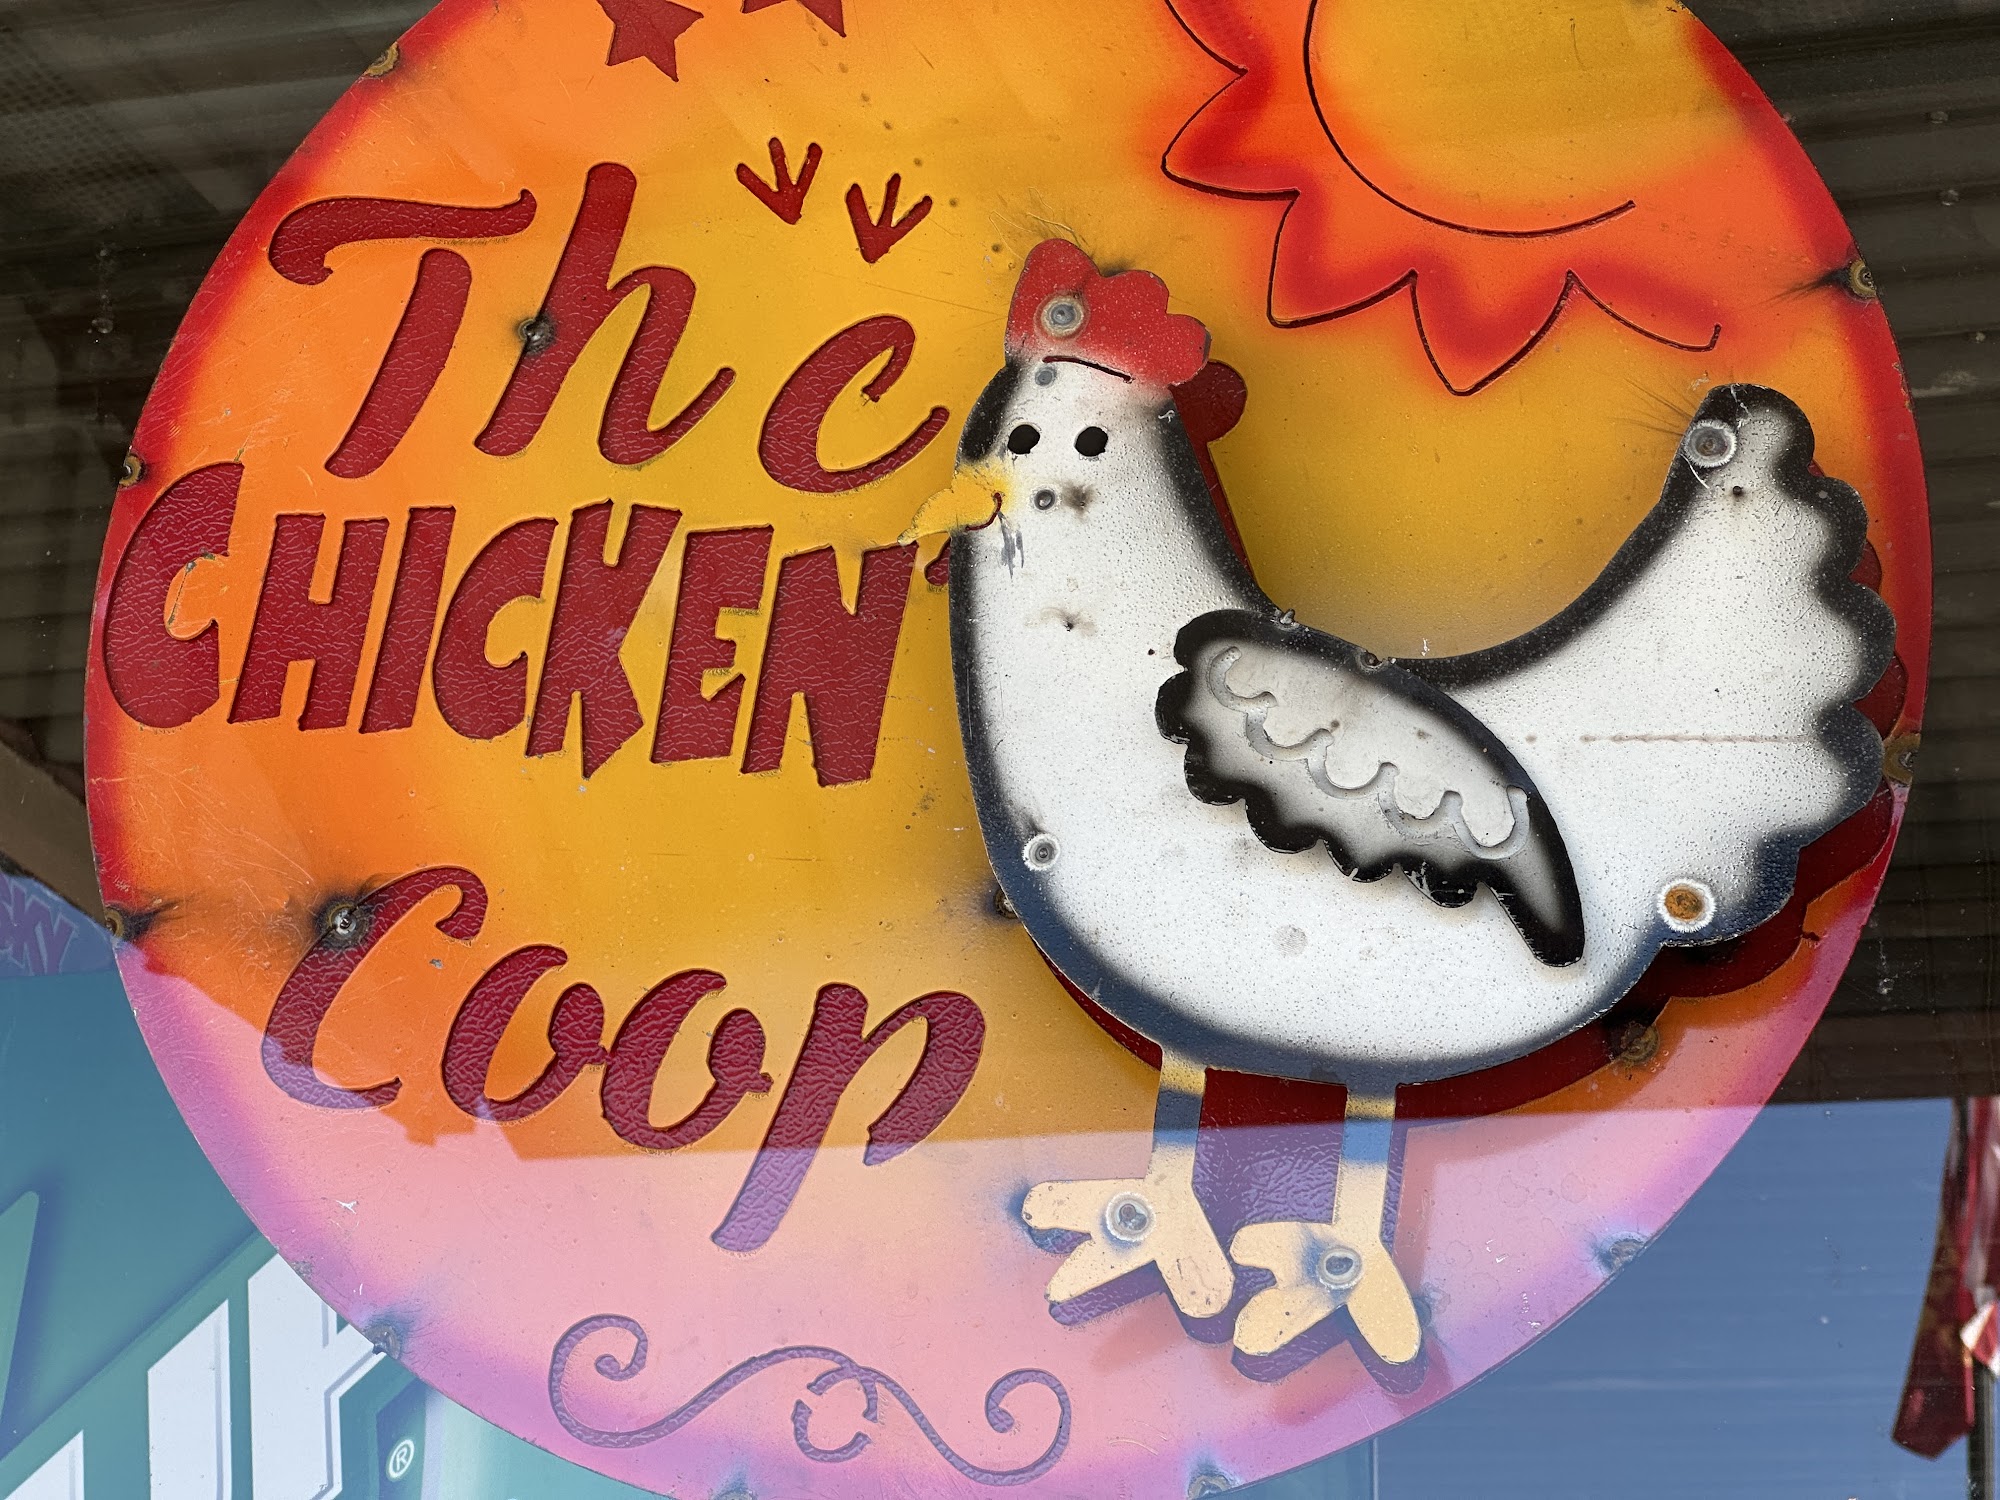 Chicken Coop Inc